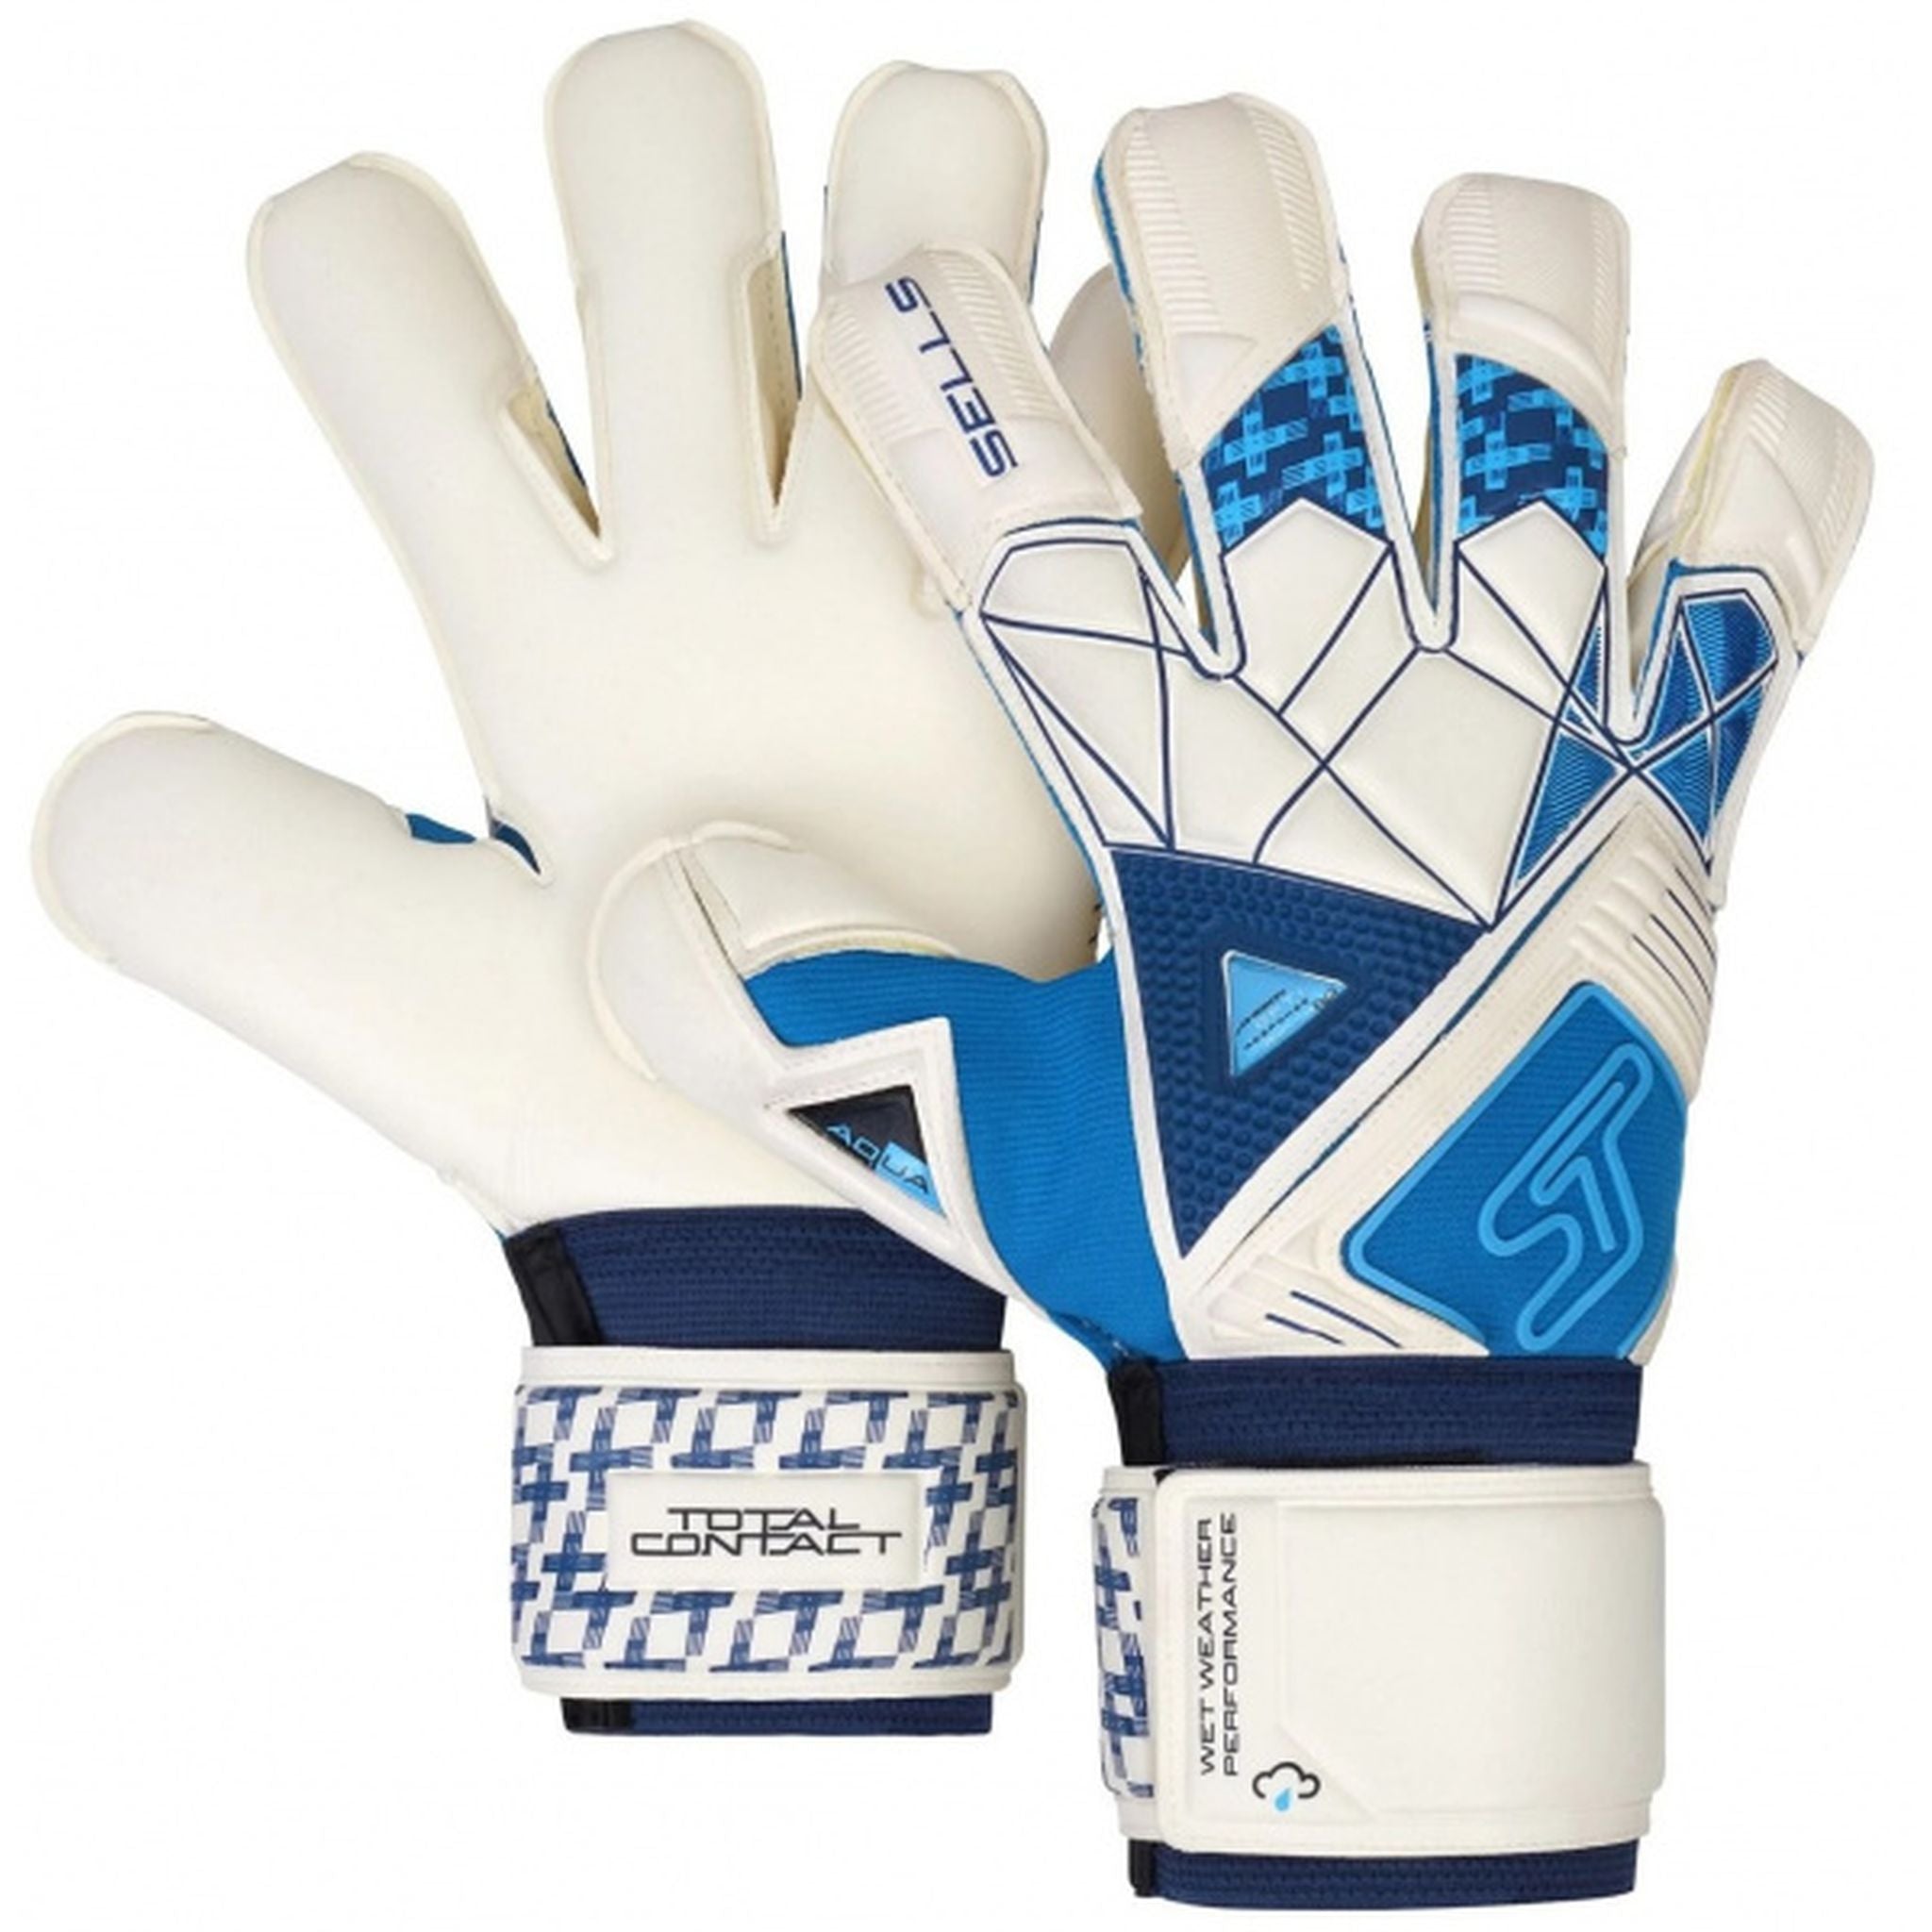 SELLS Total Contact Aqua Cyclone Goalkeeping Glove